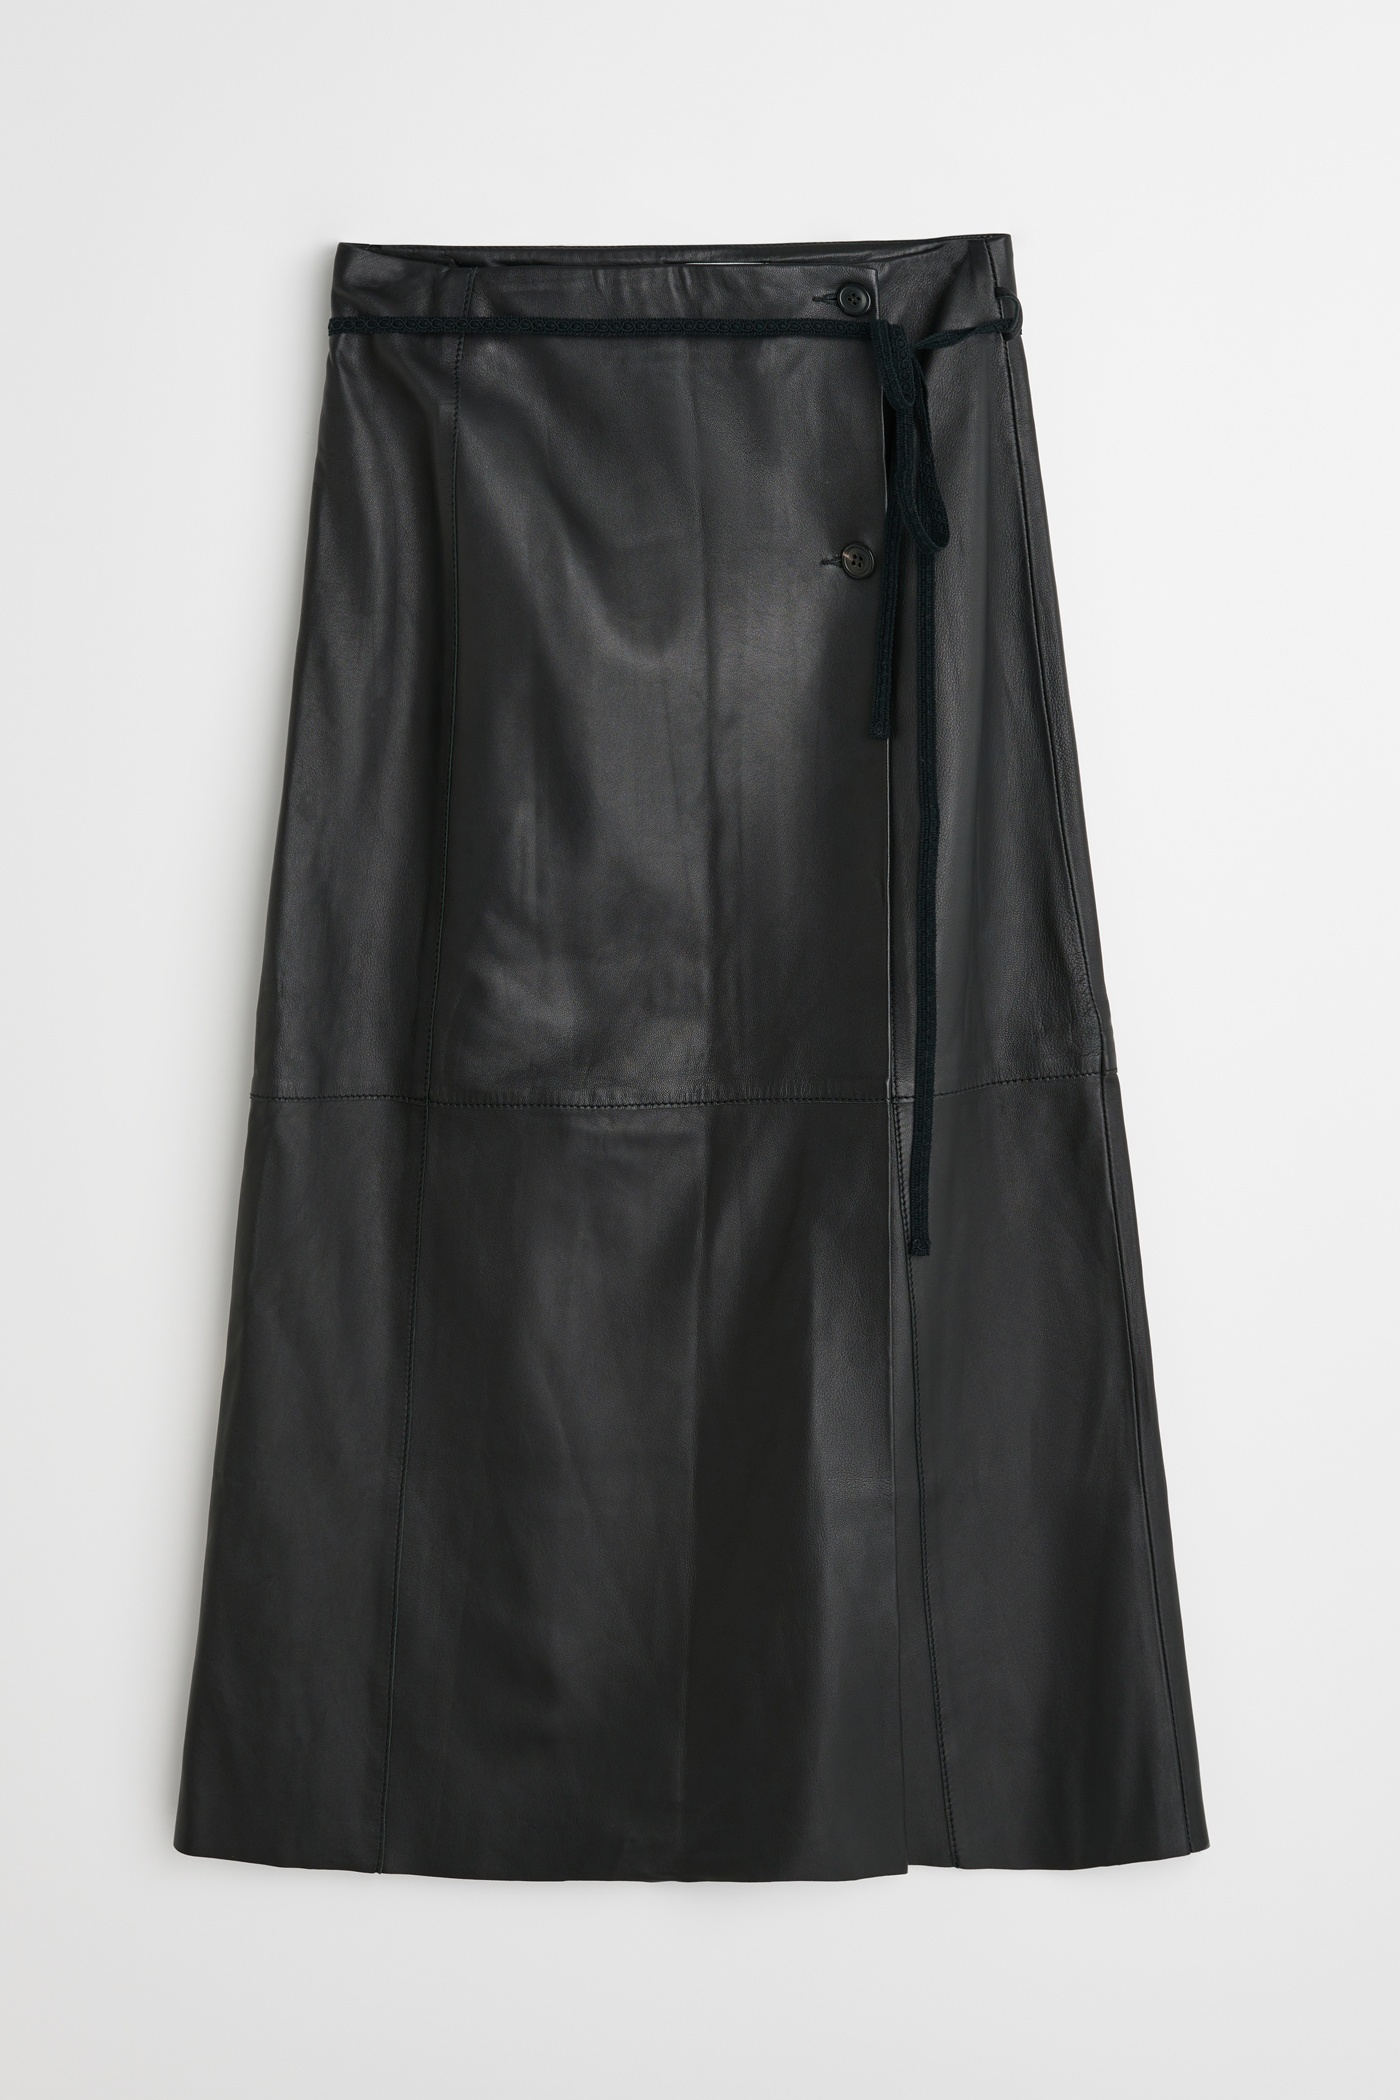 Leather Sarong Black - 7